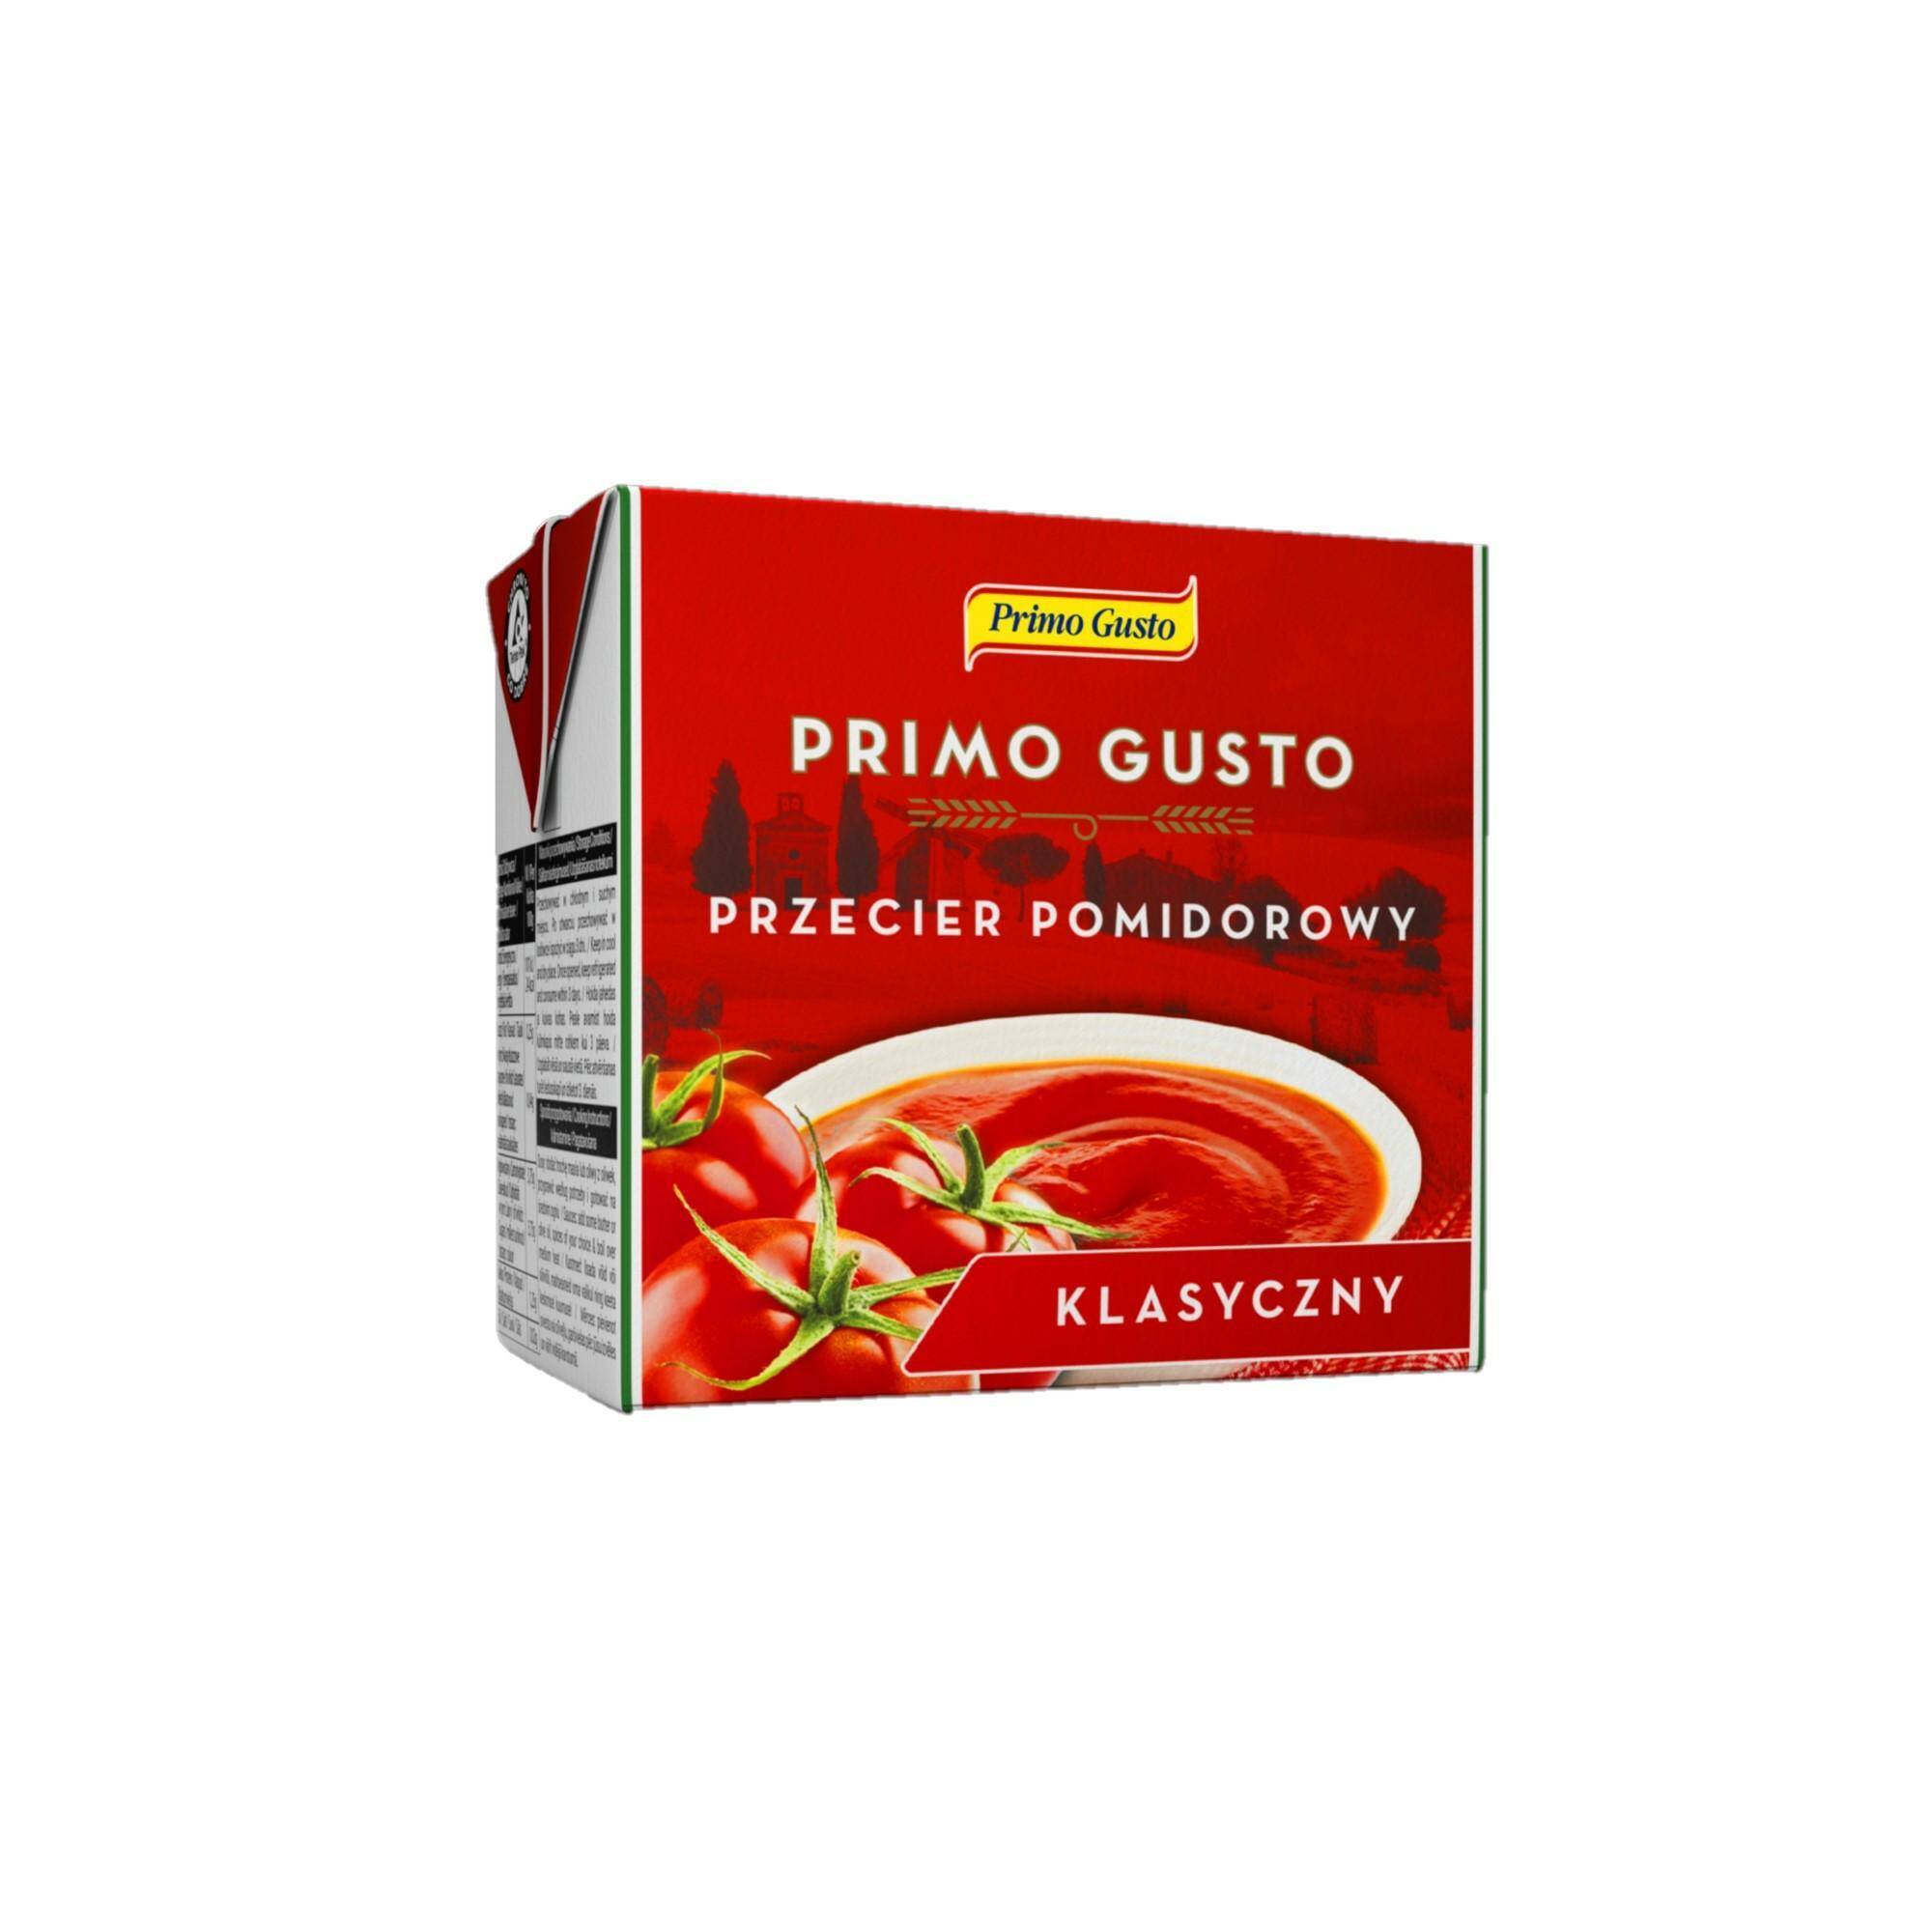 PRIMO GUSTO PRZECIER pomidorowy 500g [12]